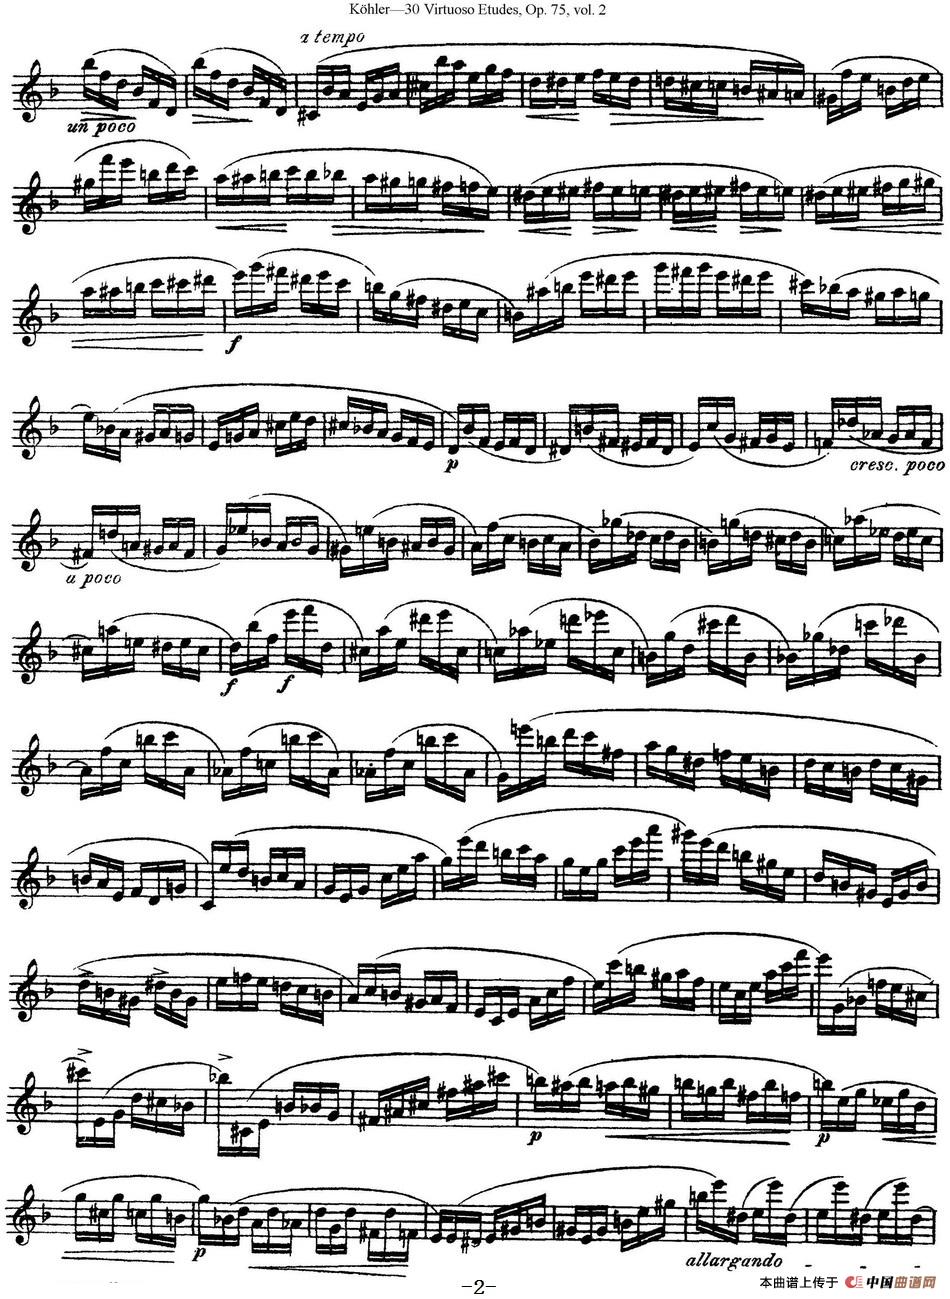 柯勒30首高级长笛练习曲作品75号（NO.20）长笛谱